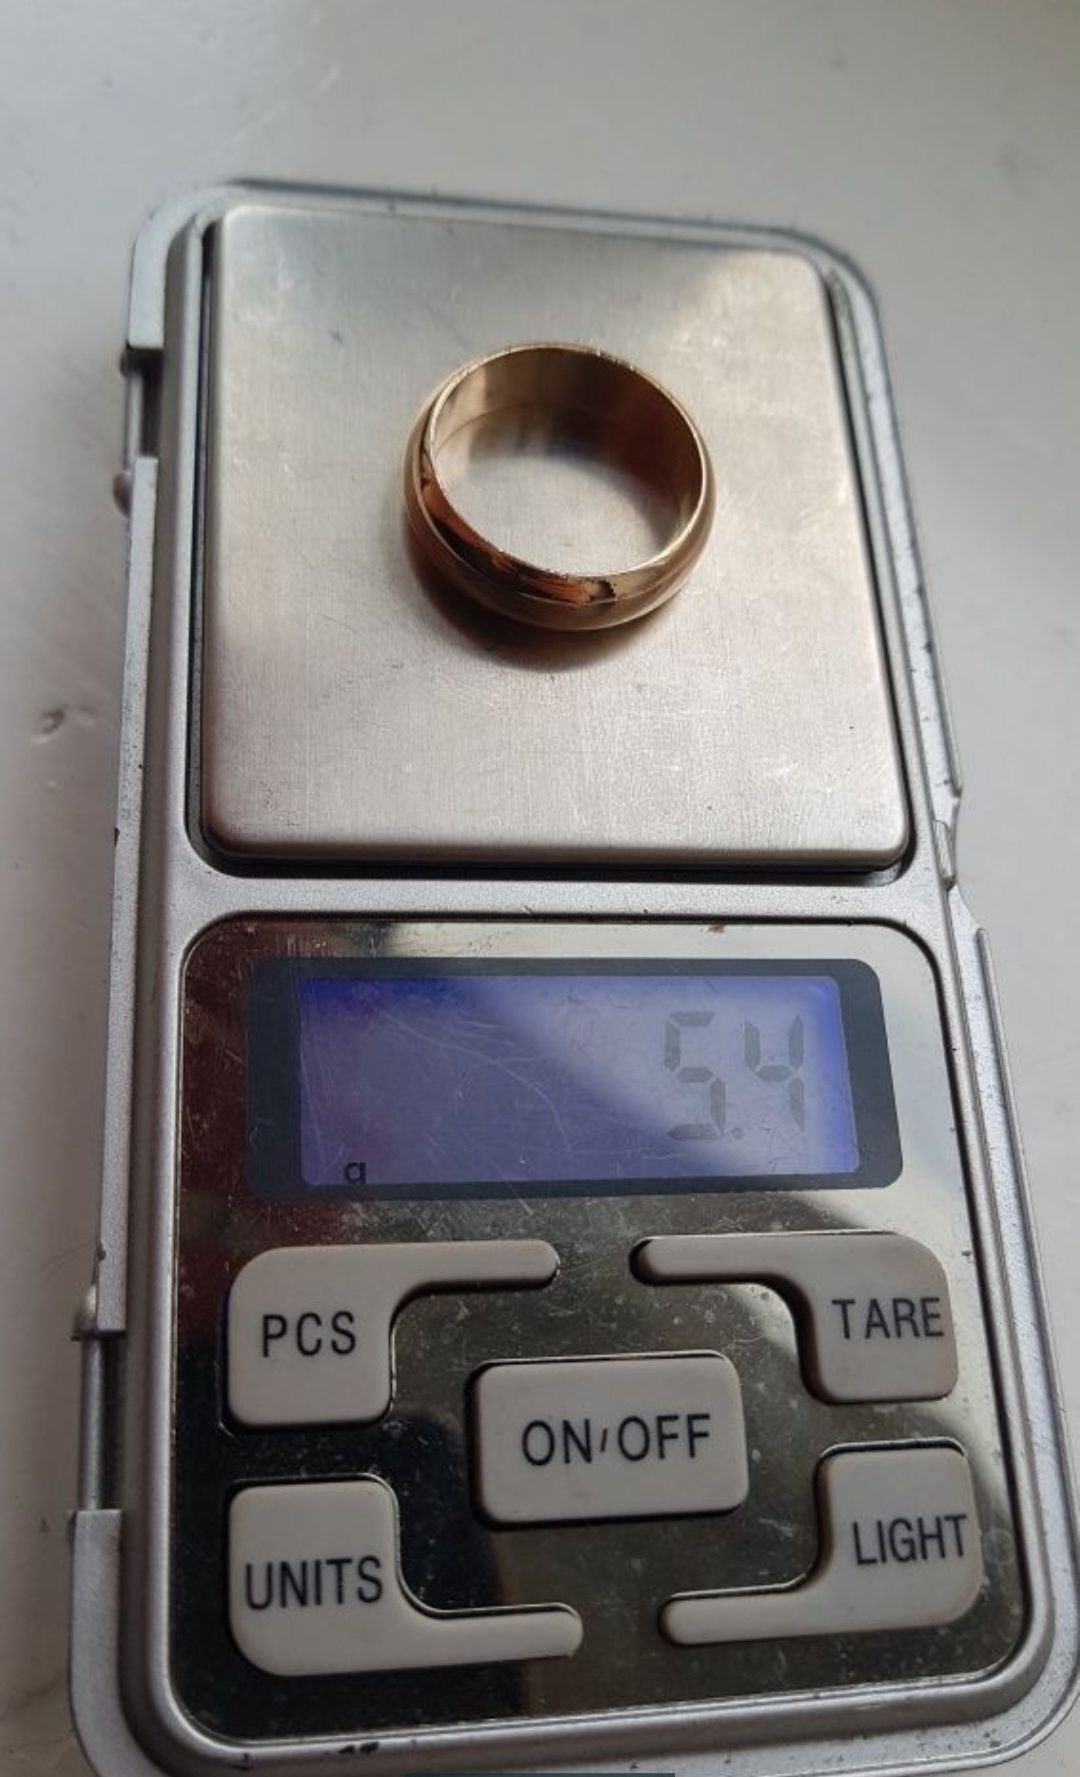 Продам золотое обручальное кольцо СР-СР 585 проба